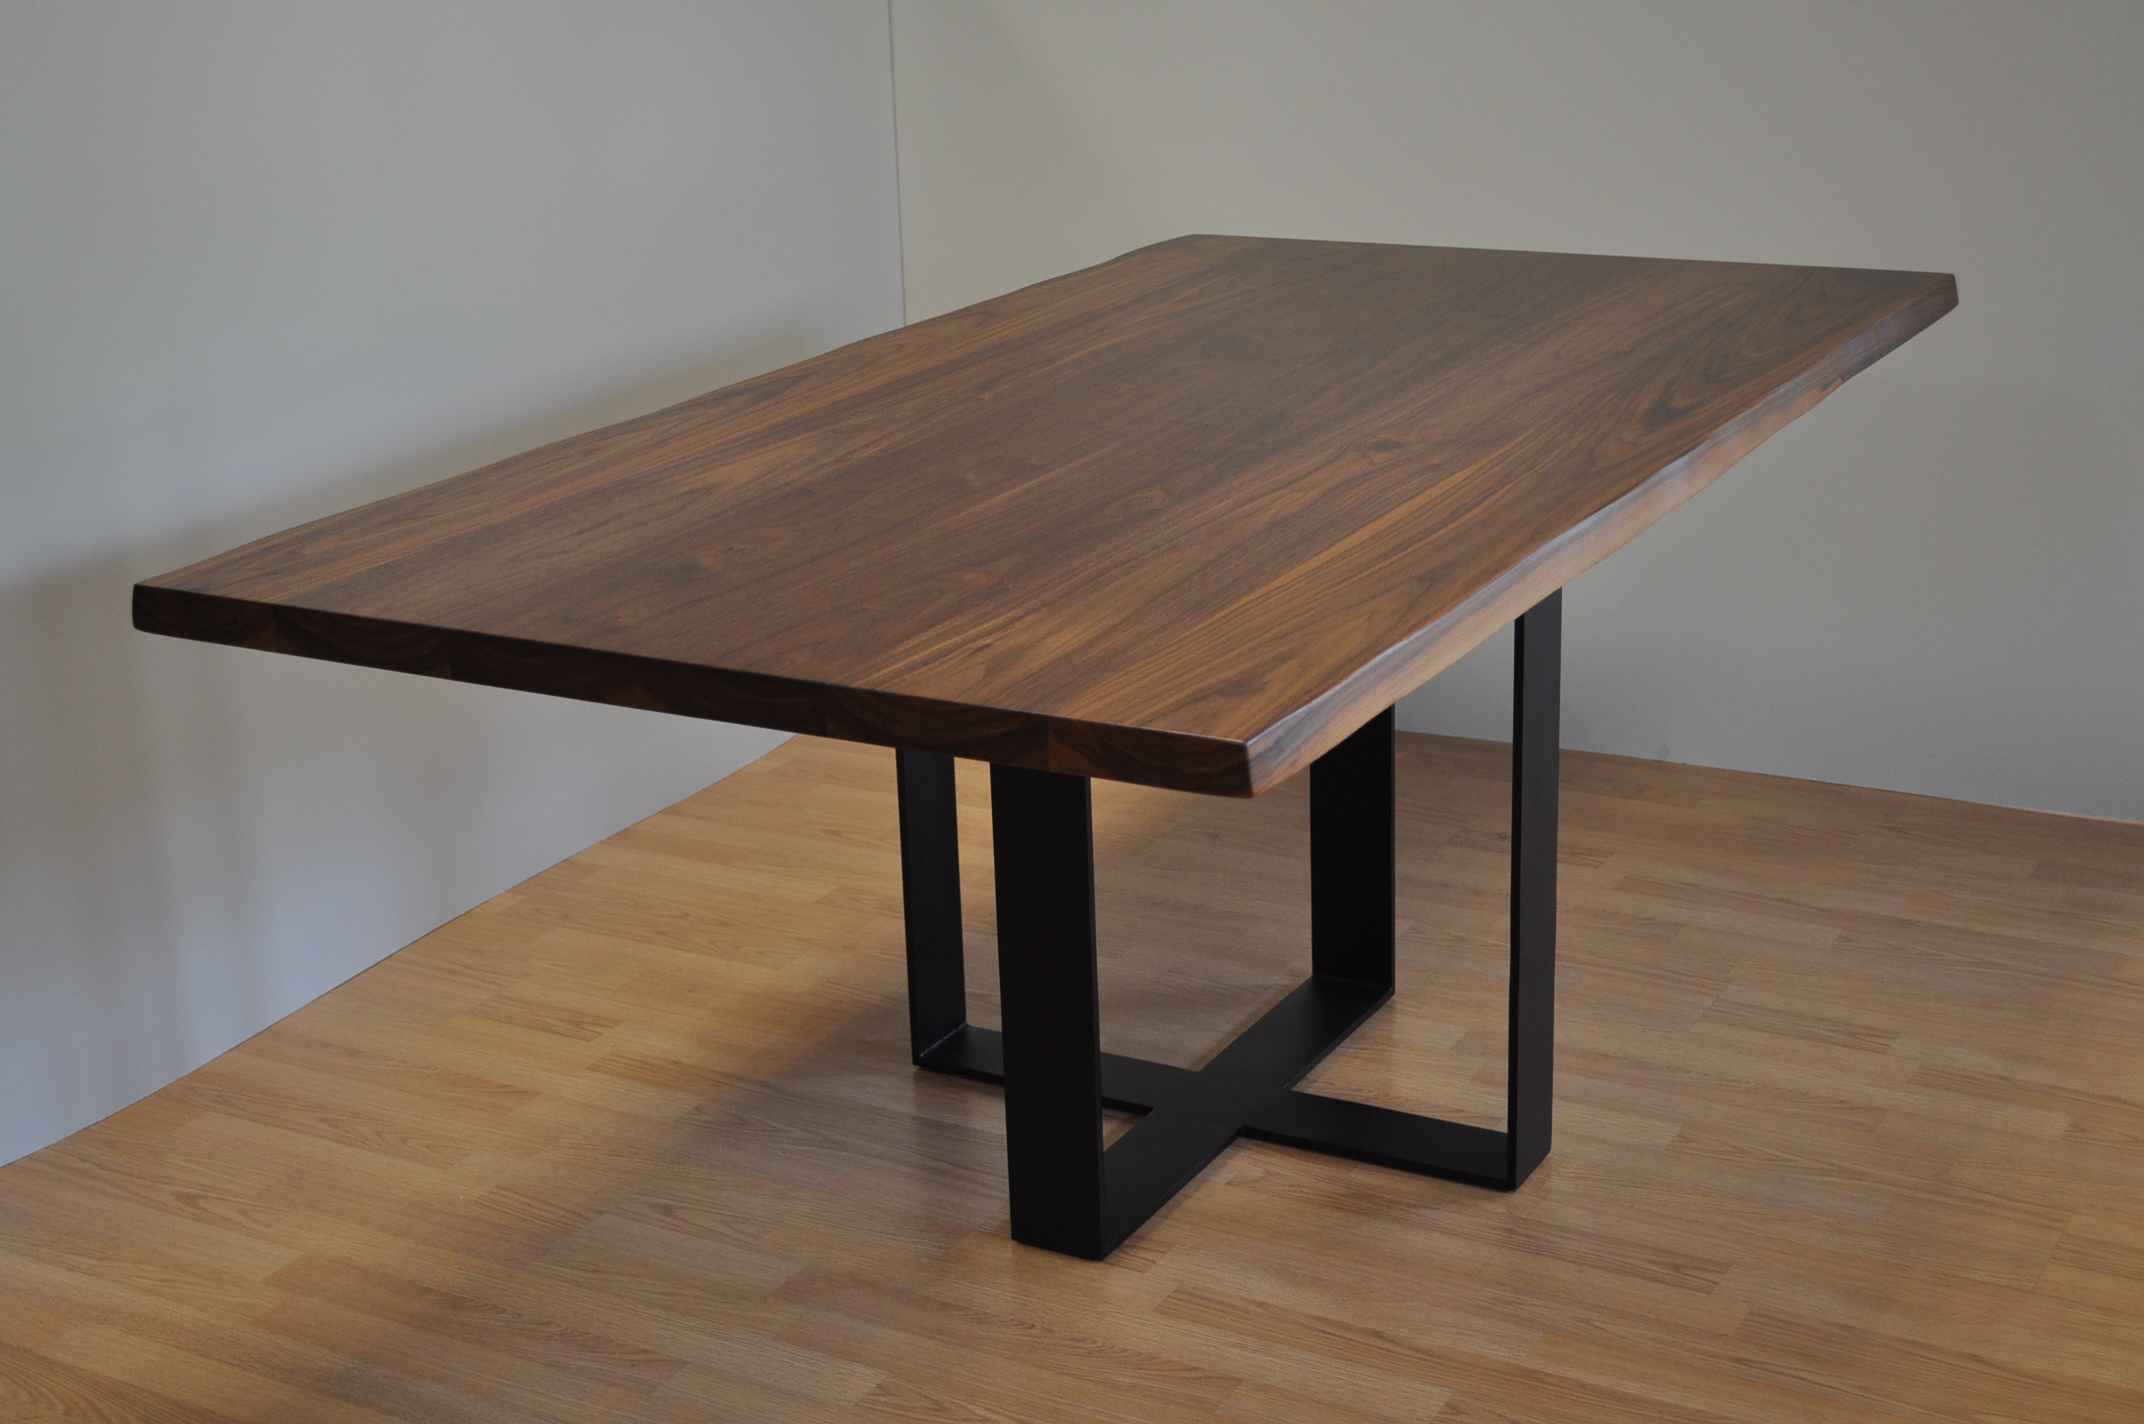 שולחן עץ מלא אגוז אמריקאי – דגם מוסקט